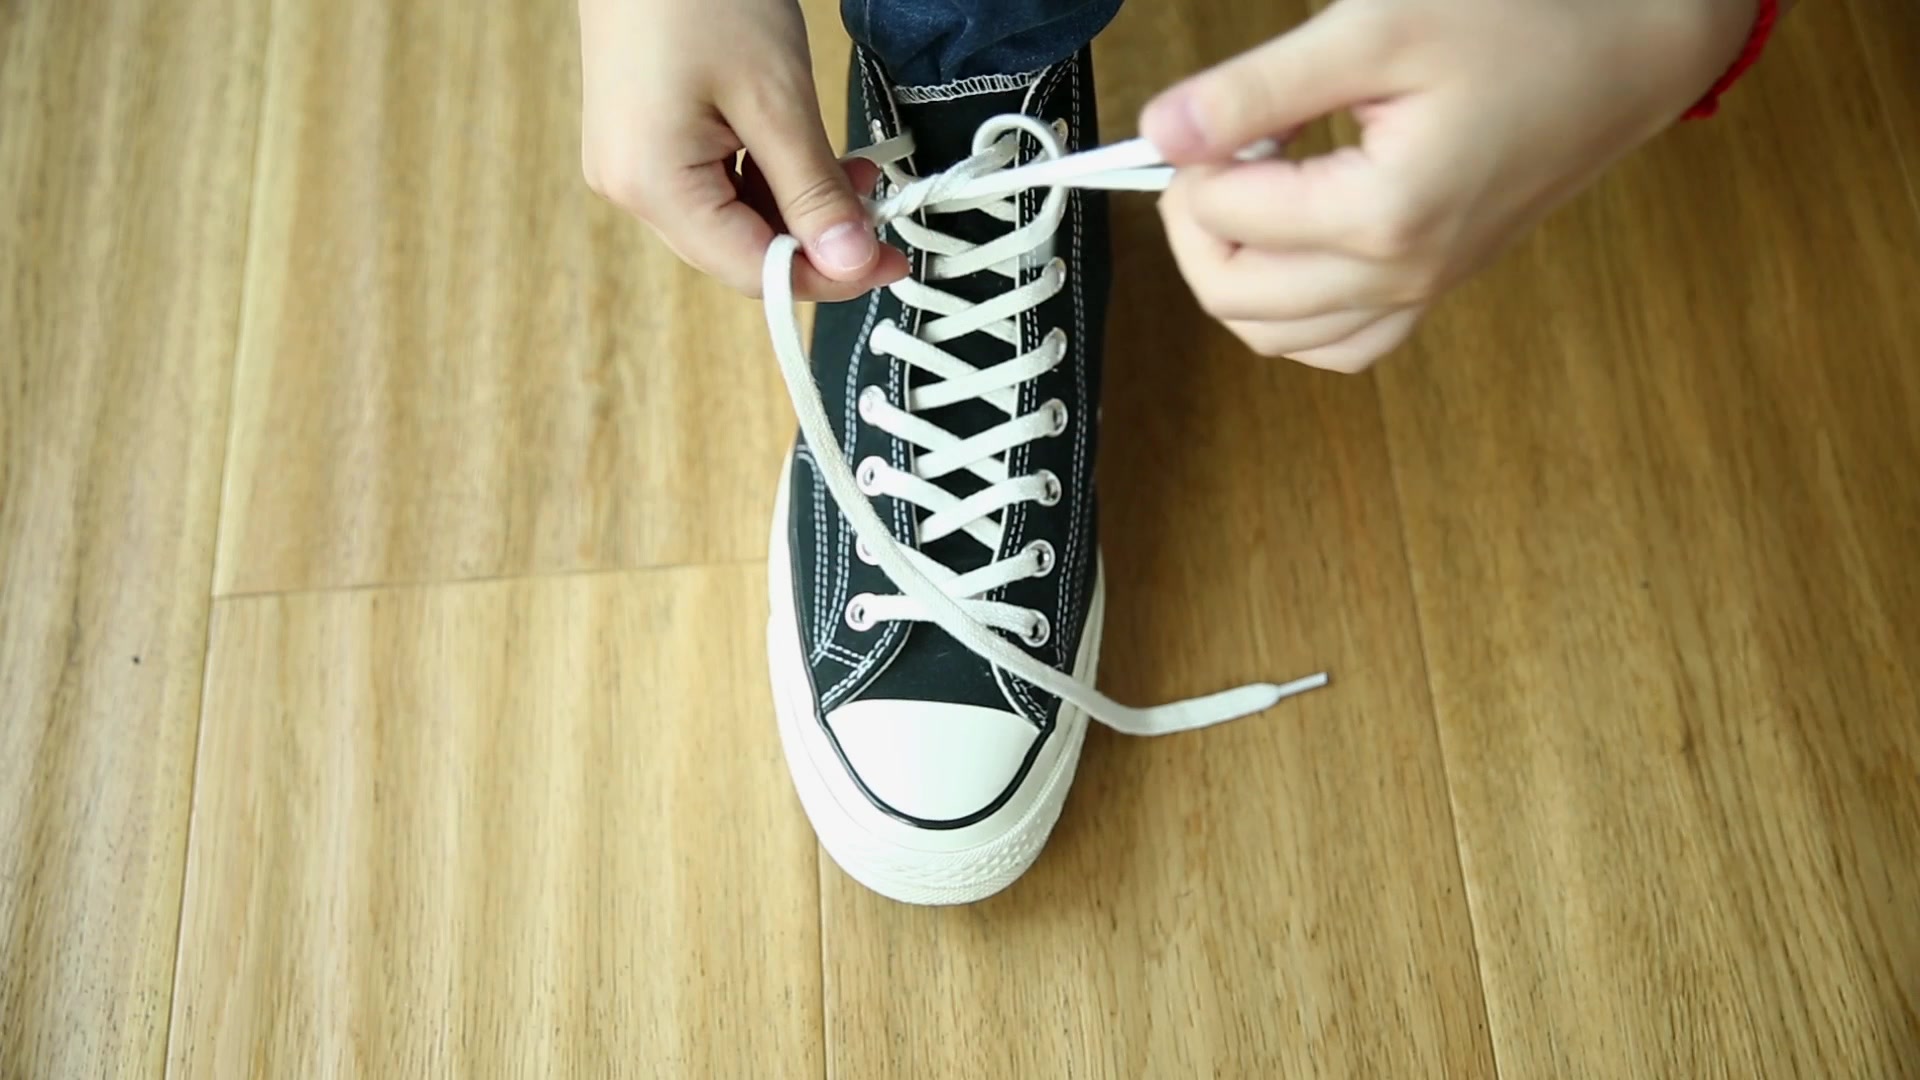 鞋子鞋带系法教程 这种系法你试过么_伊秀视频|yxlady.com